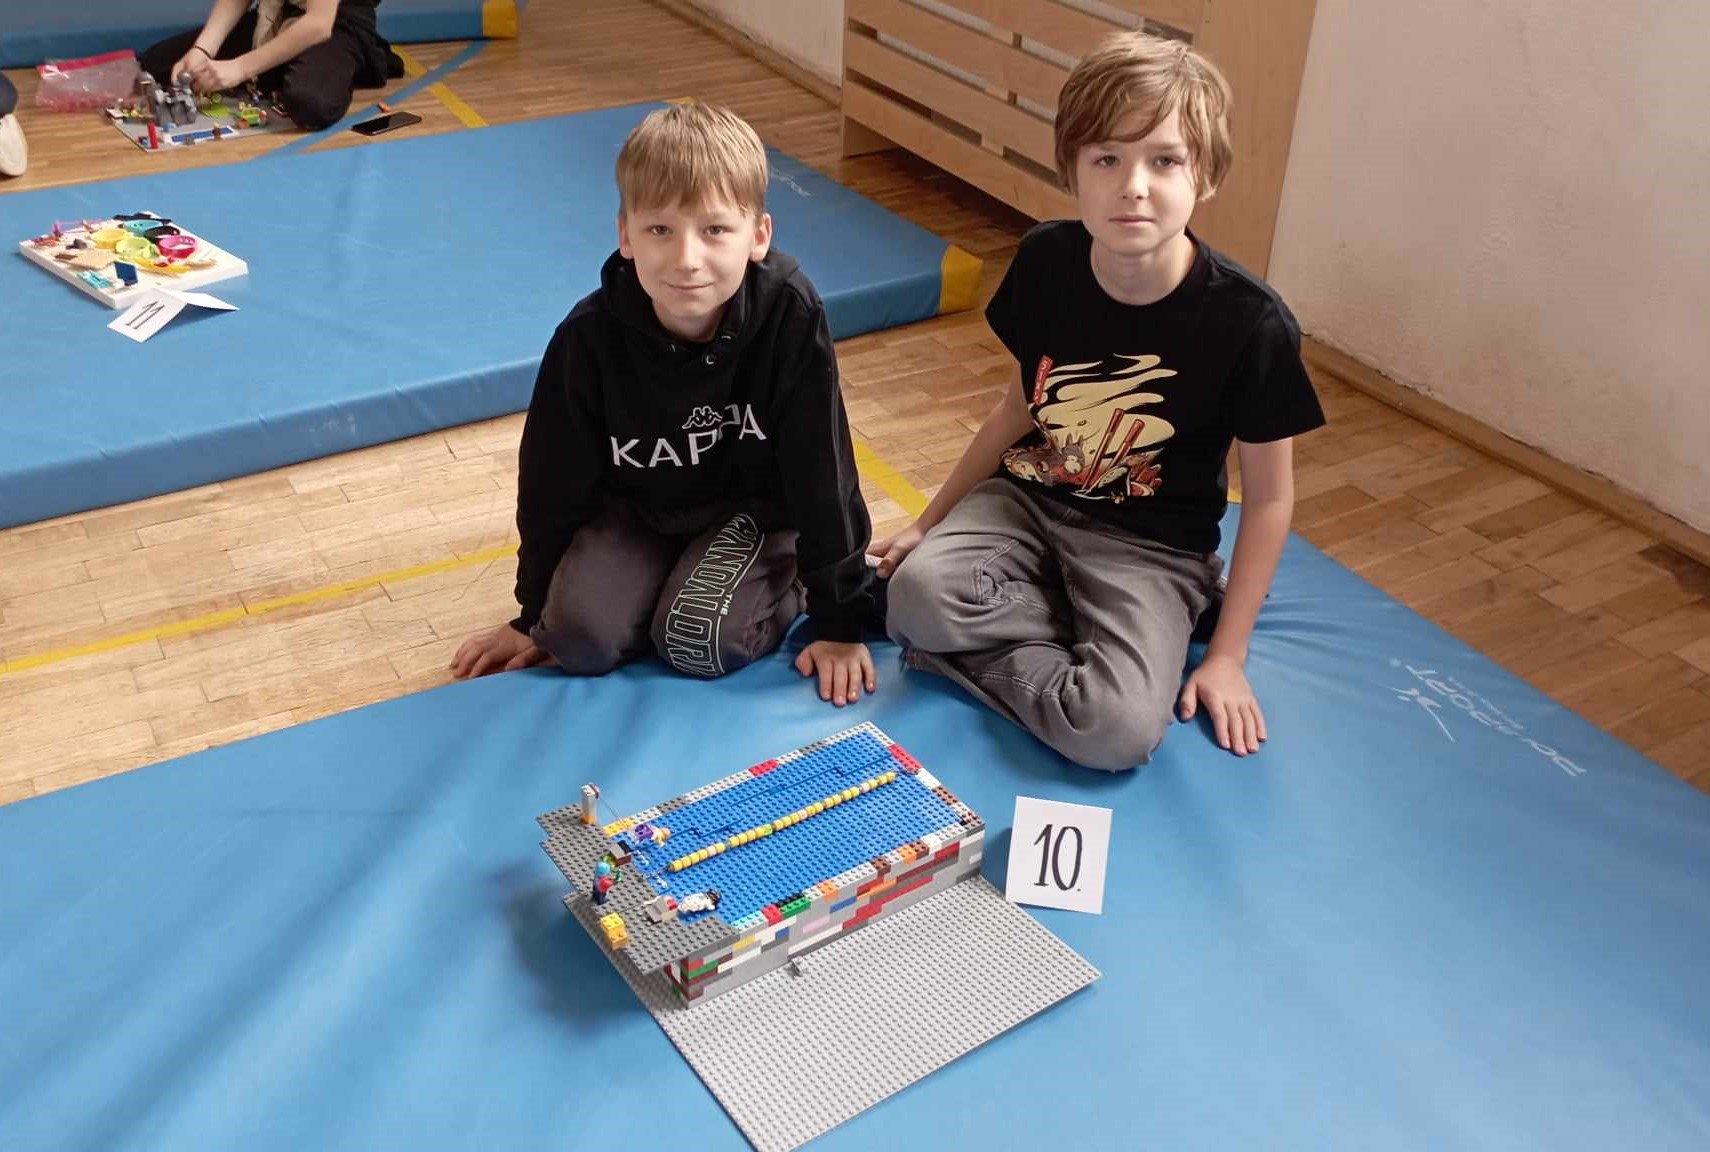 W sali gimnastycznej na niebieskim materacu siedzi dwoje uczniów z klasy III. Przed nimi stoi ich budowla z klocków LEGO i etykietka z liczbą 10. W tle inny materac z dziećmi i budowlami z klocków.